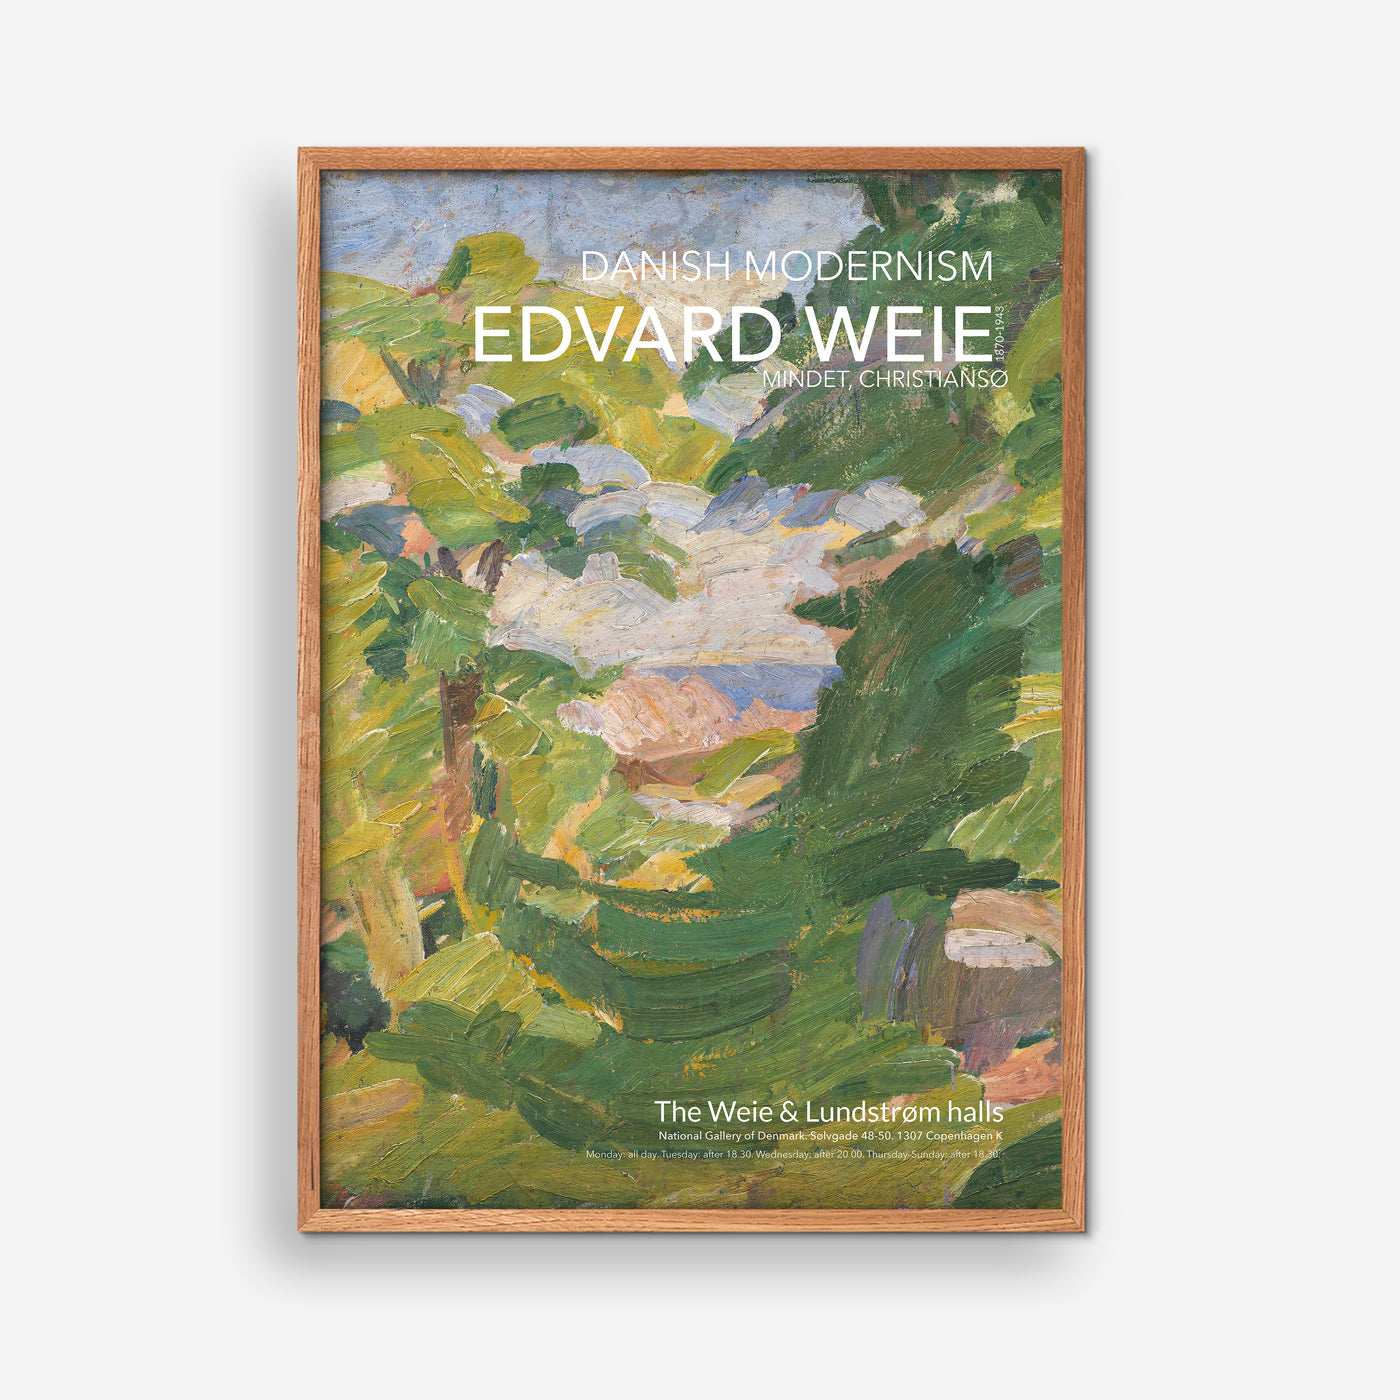 The Mind - Edvard Weie